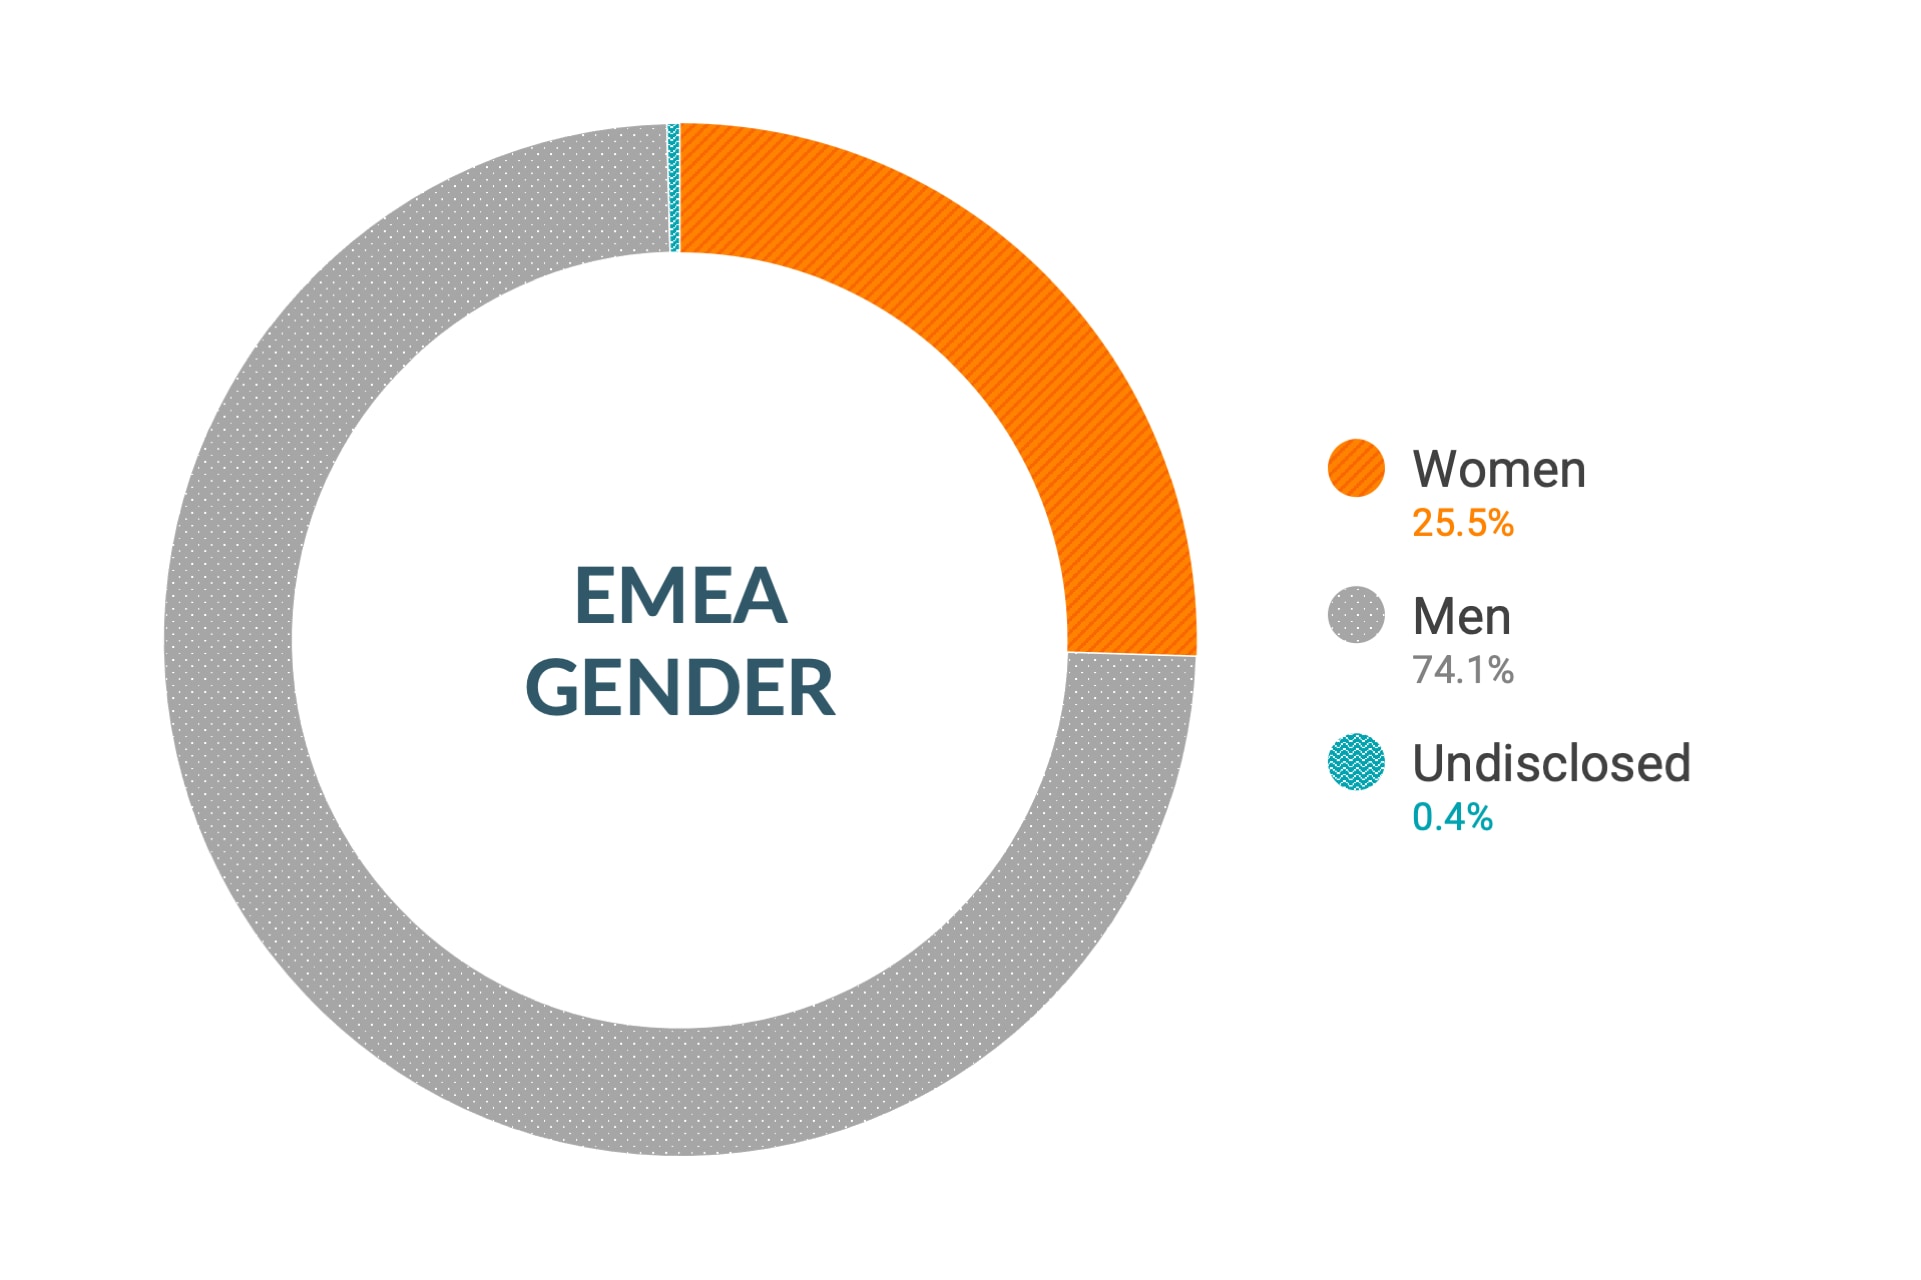 Cloudera のダイバーシティとインクルージョンデータ (欧州、中東、アフリカの性別比): 女性26%、男性73.6%、回答なし0.4%